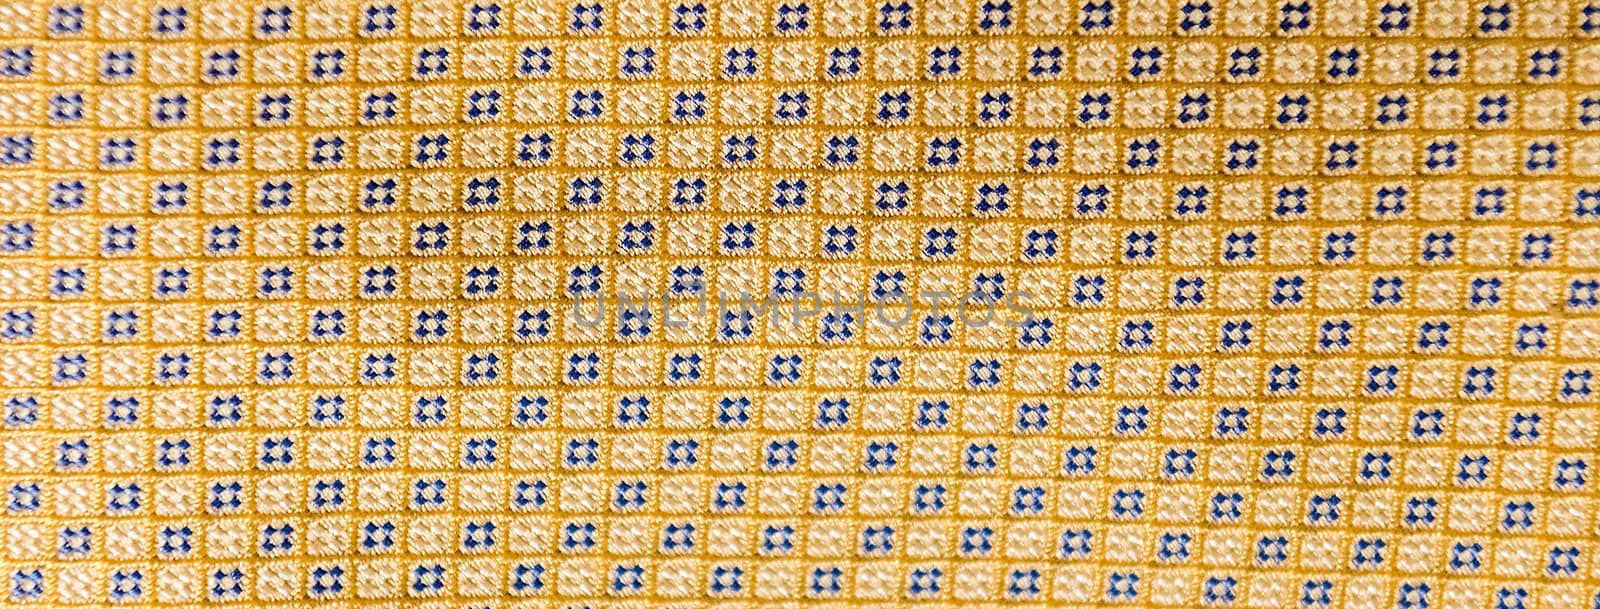 Background of a necktie texture by marcorubino